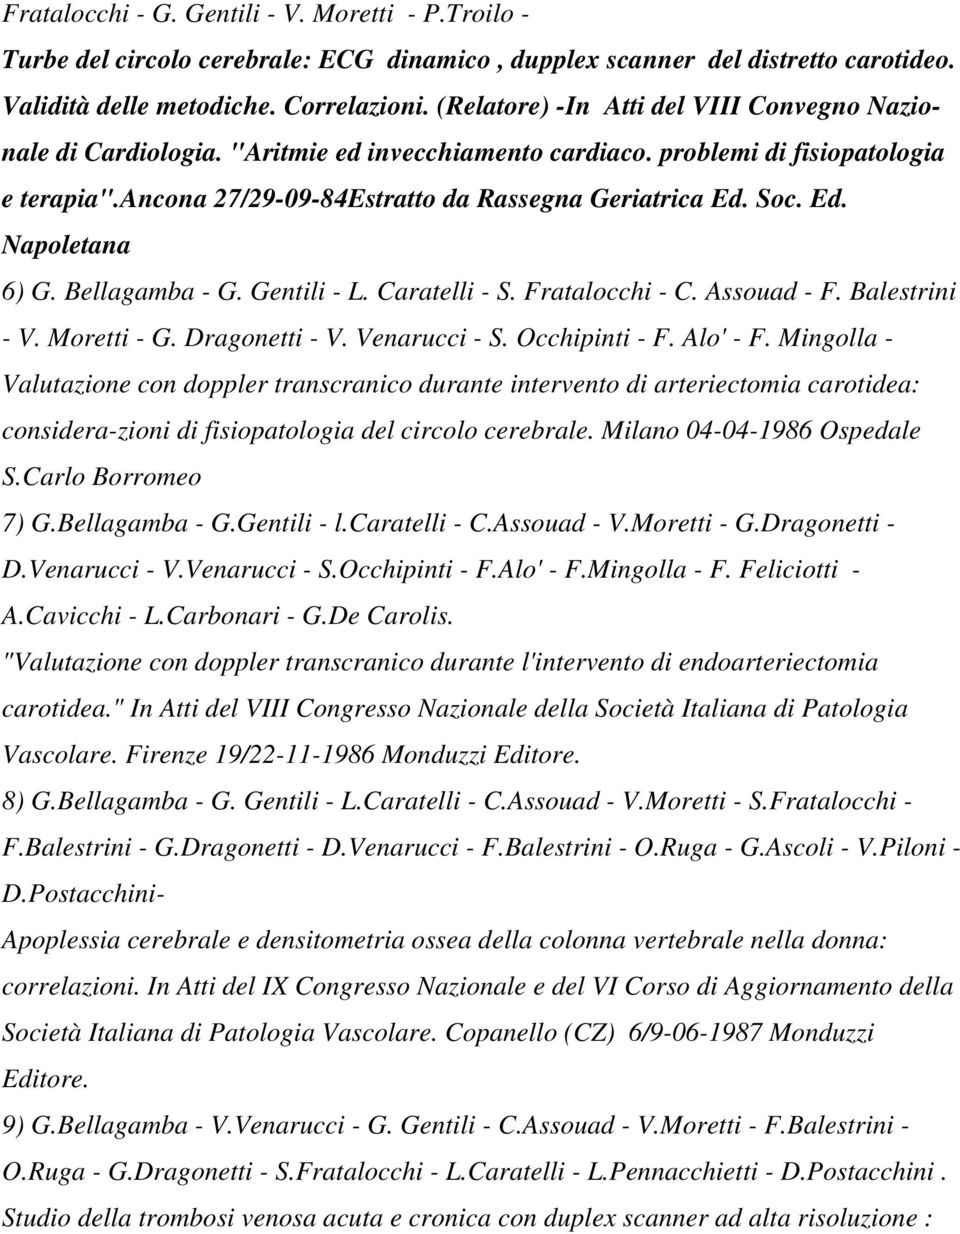 Ed. Napoletana 6) G. Bellagamba - G. Gentili - L. Caratelli - S. Fratalocchi - C. Assouad - F. Balestrini - V. Moretti - G. Dragonetti - V. Venarucci - S. Occhipinti - F. Alo' - F.